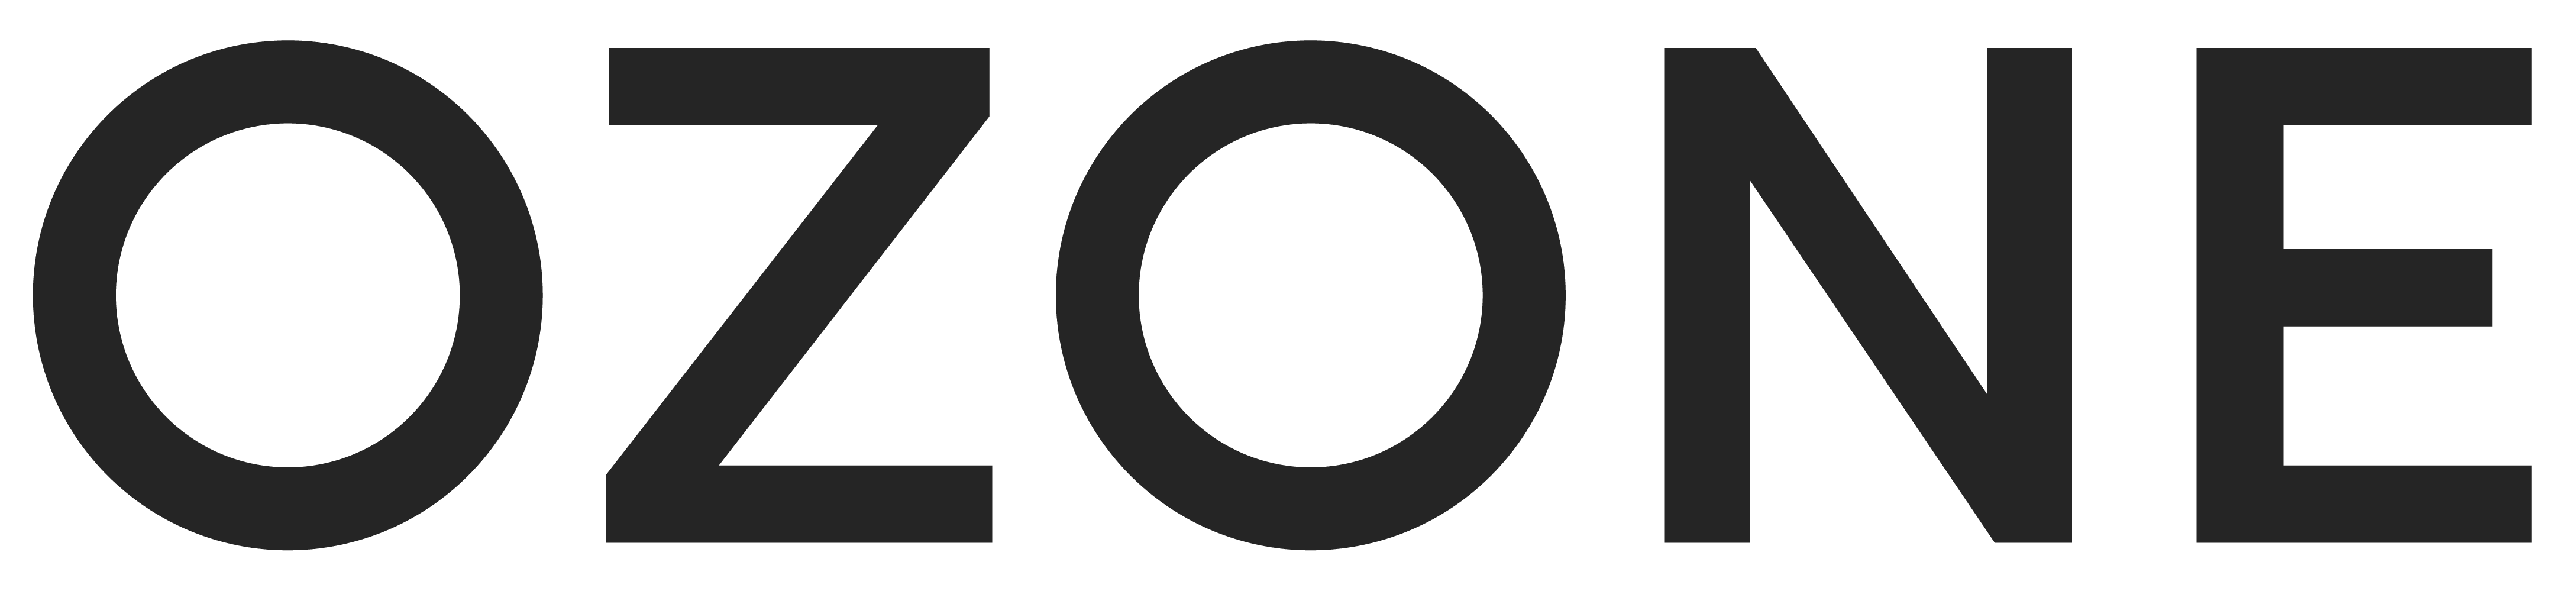 Franchise Group (Joes) Logo